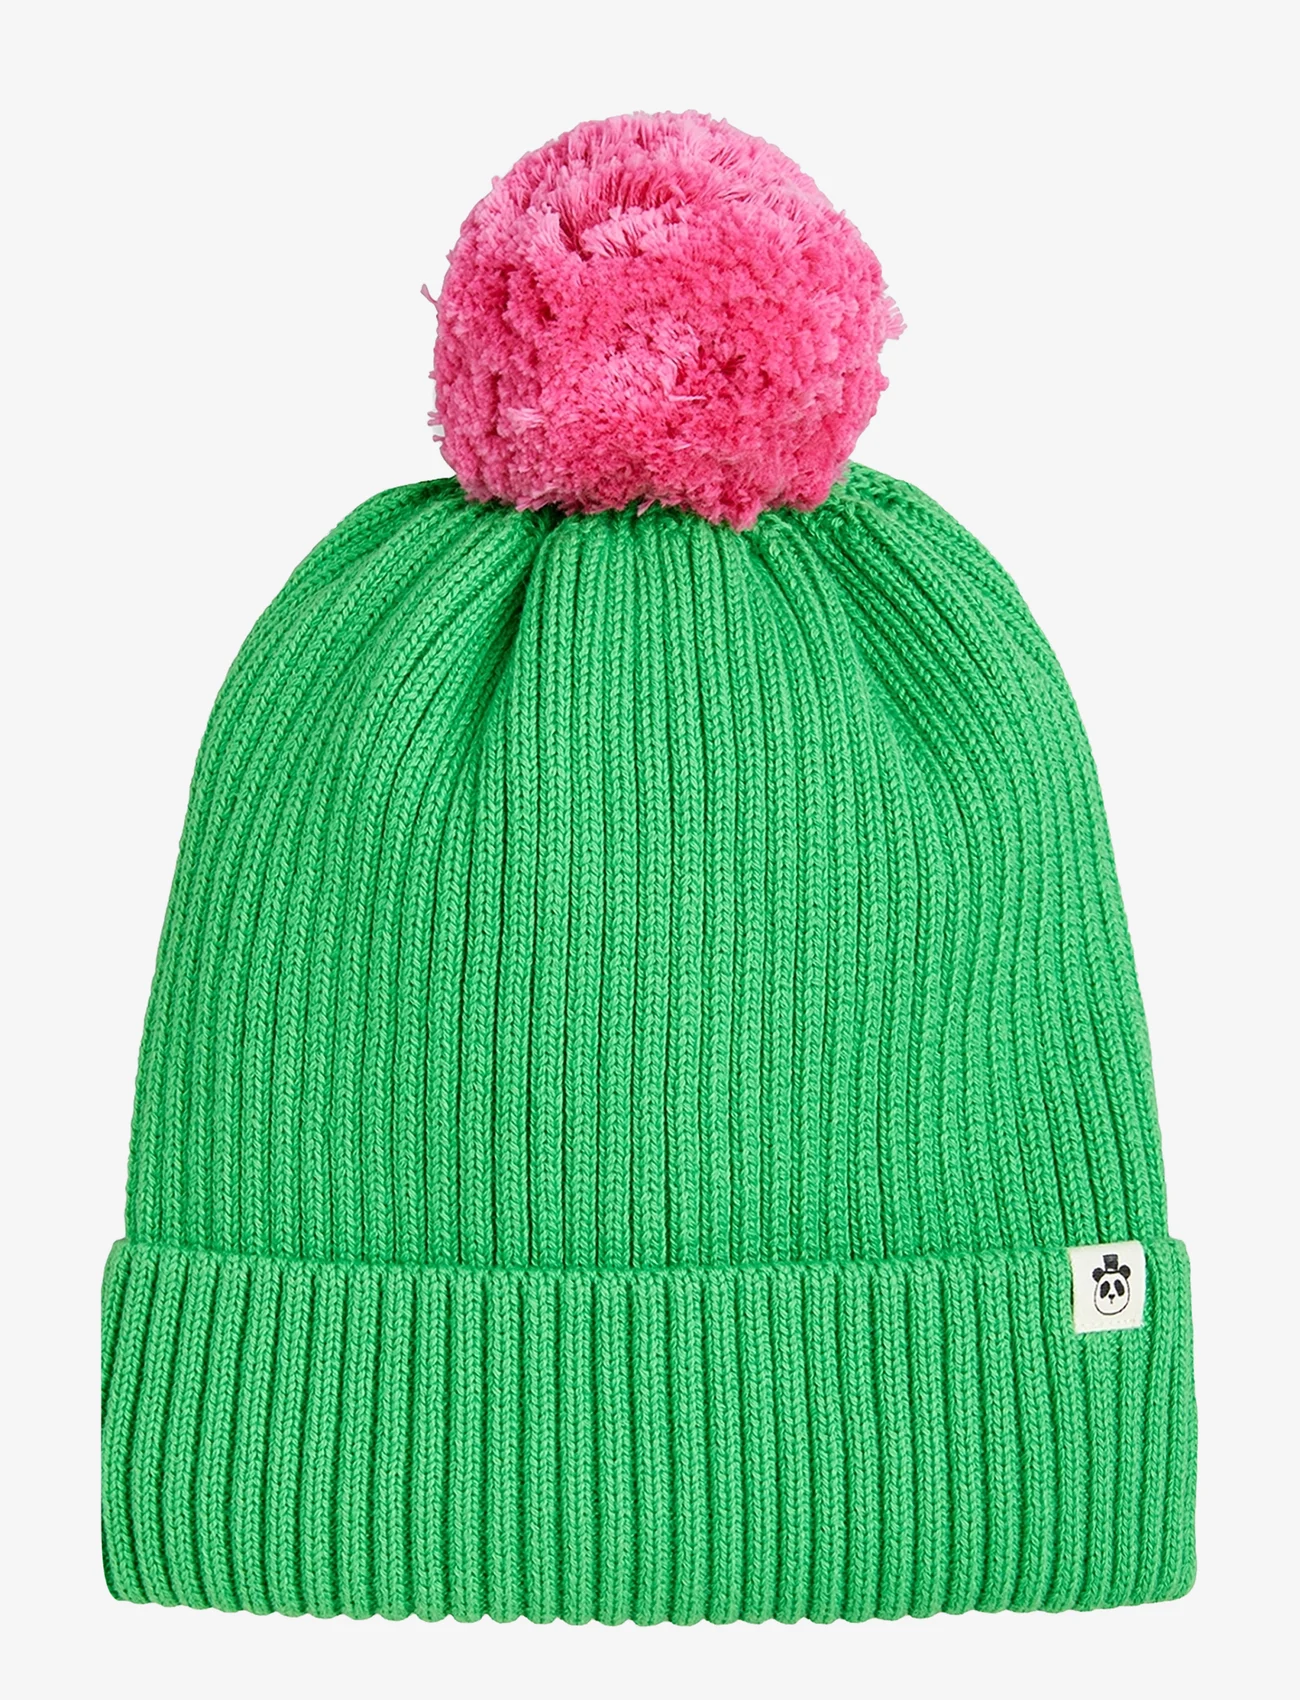 Mini Rodini - Pompom knitted hat - vinterluer - green - 0